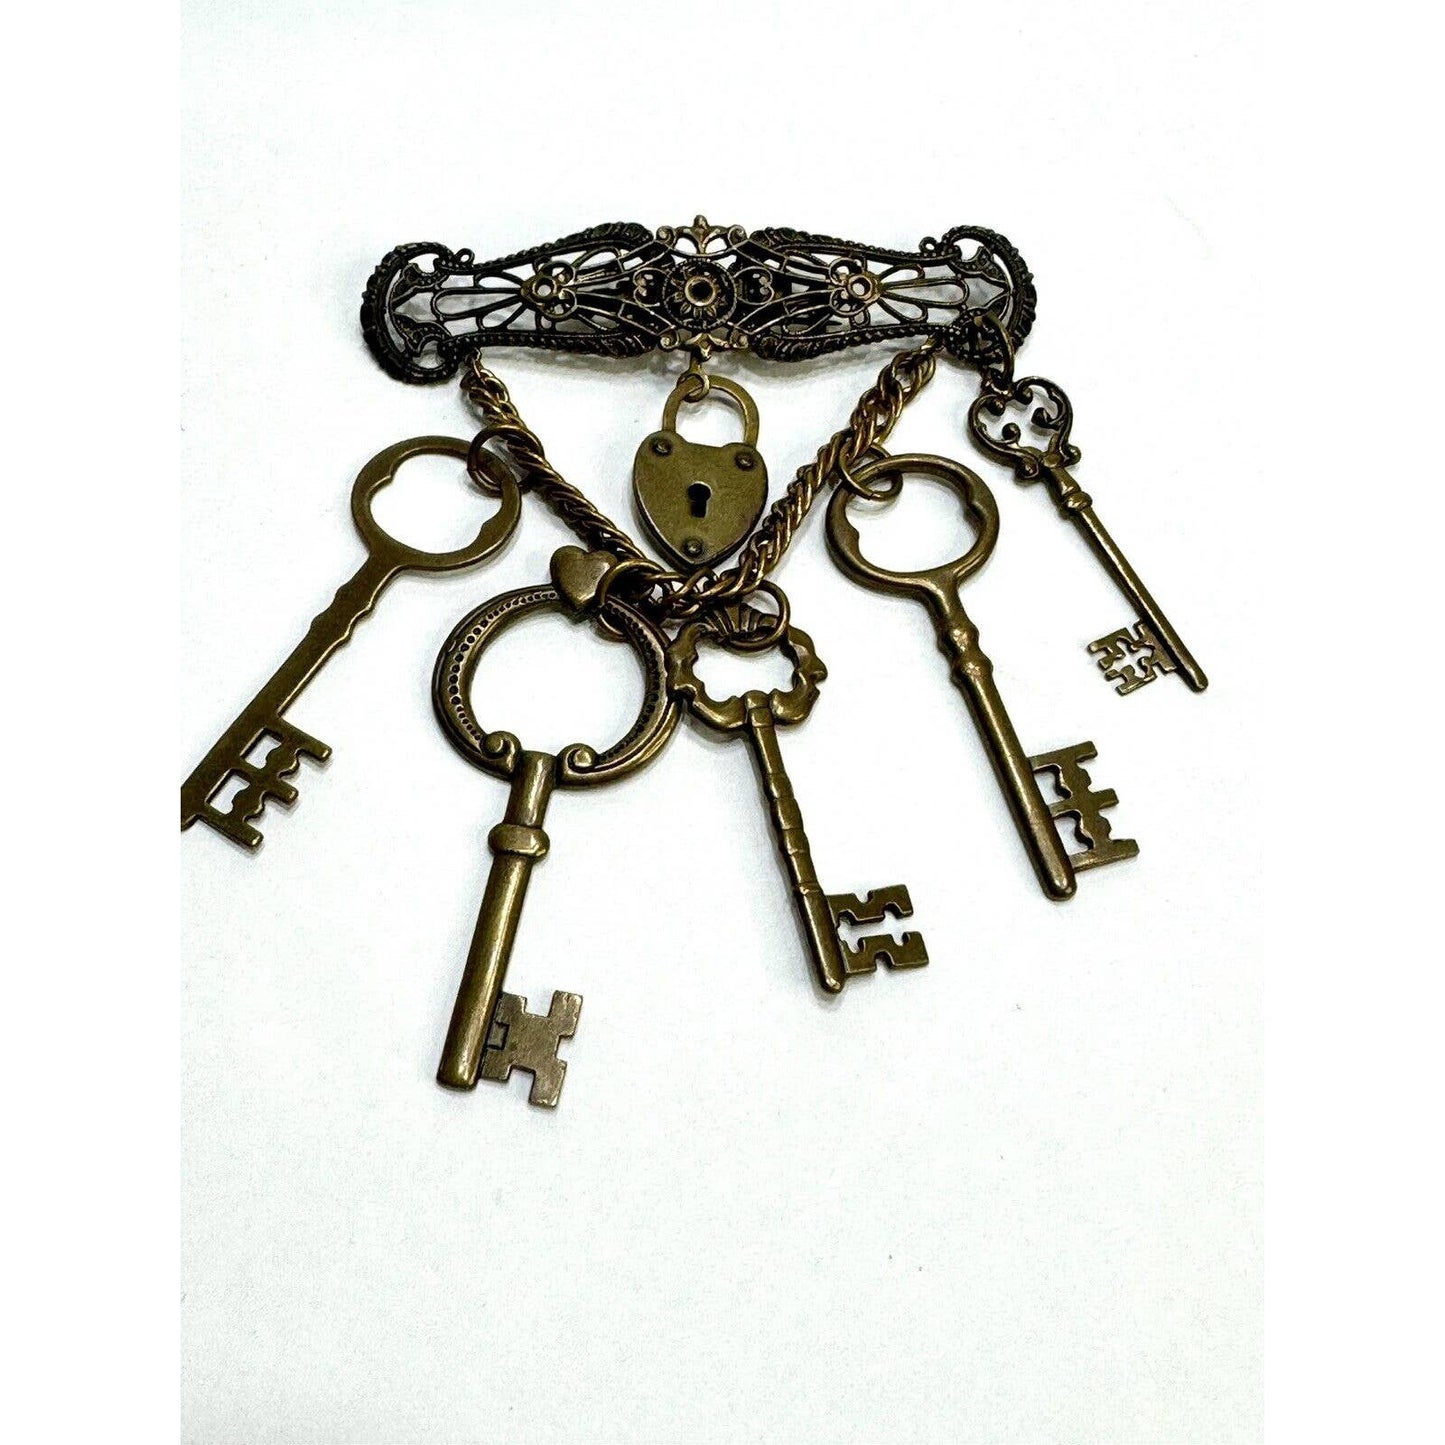 Jan MichaelsSteampunk Keys To My Heart Dangle Brooch Pin by Jan Michaels - Black Dog Vintage